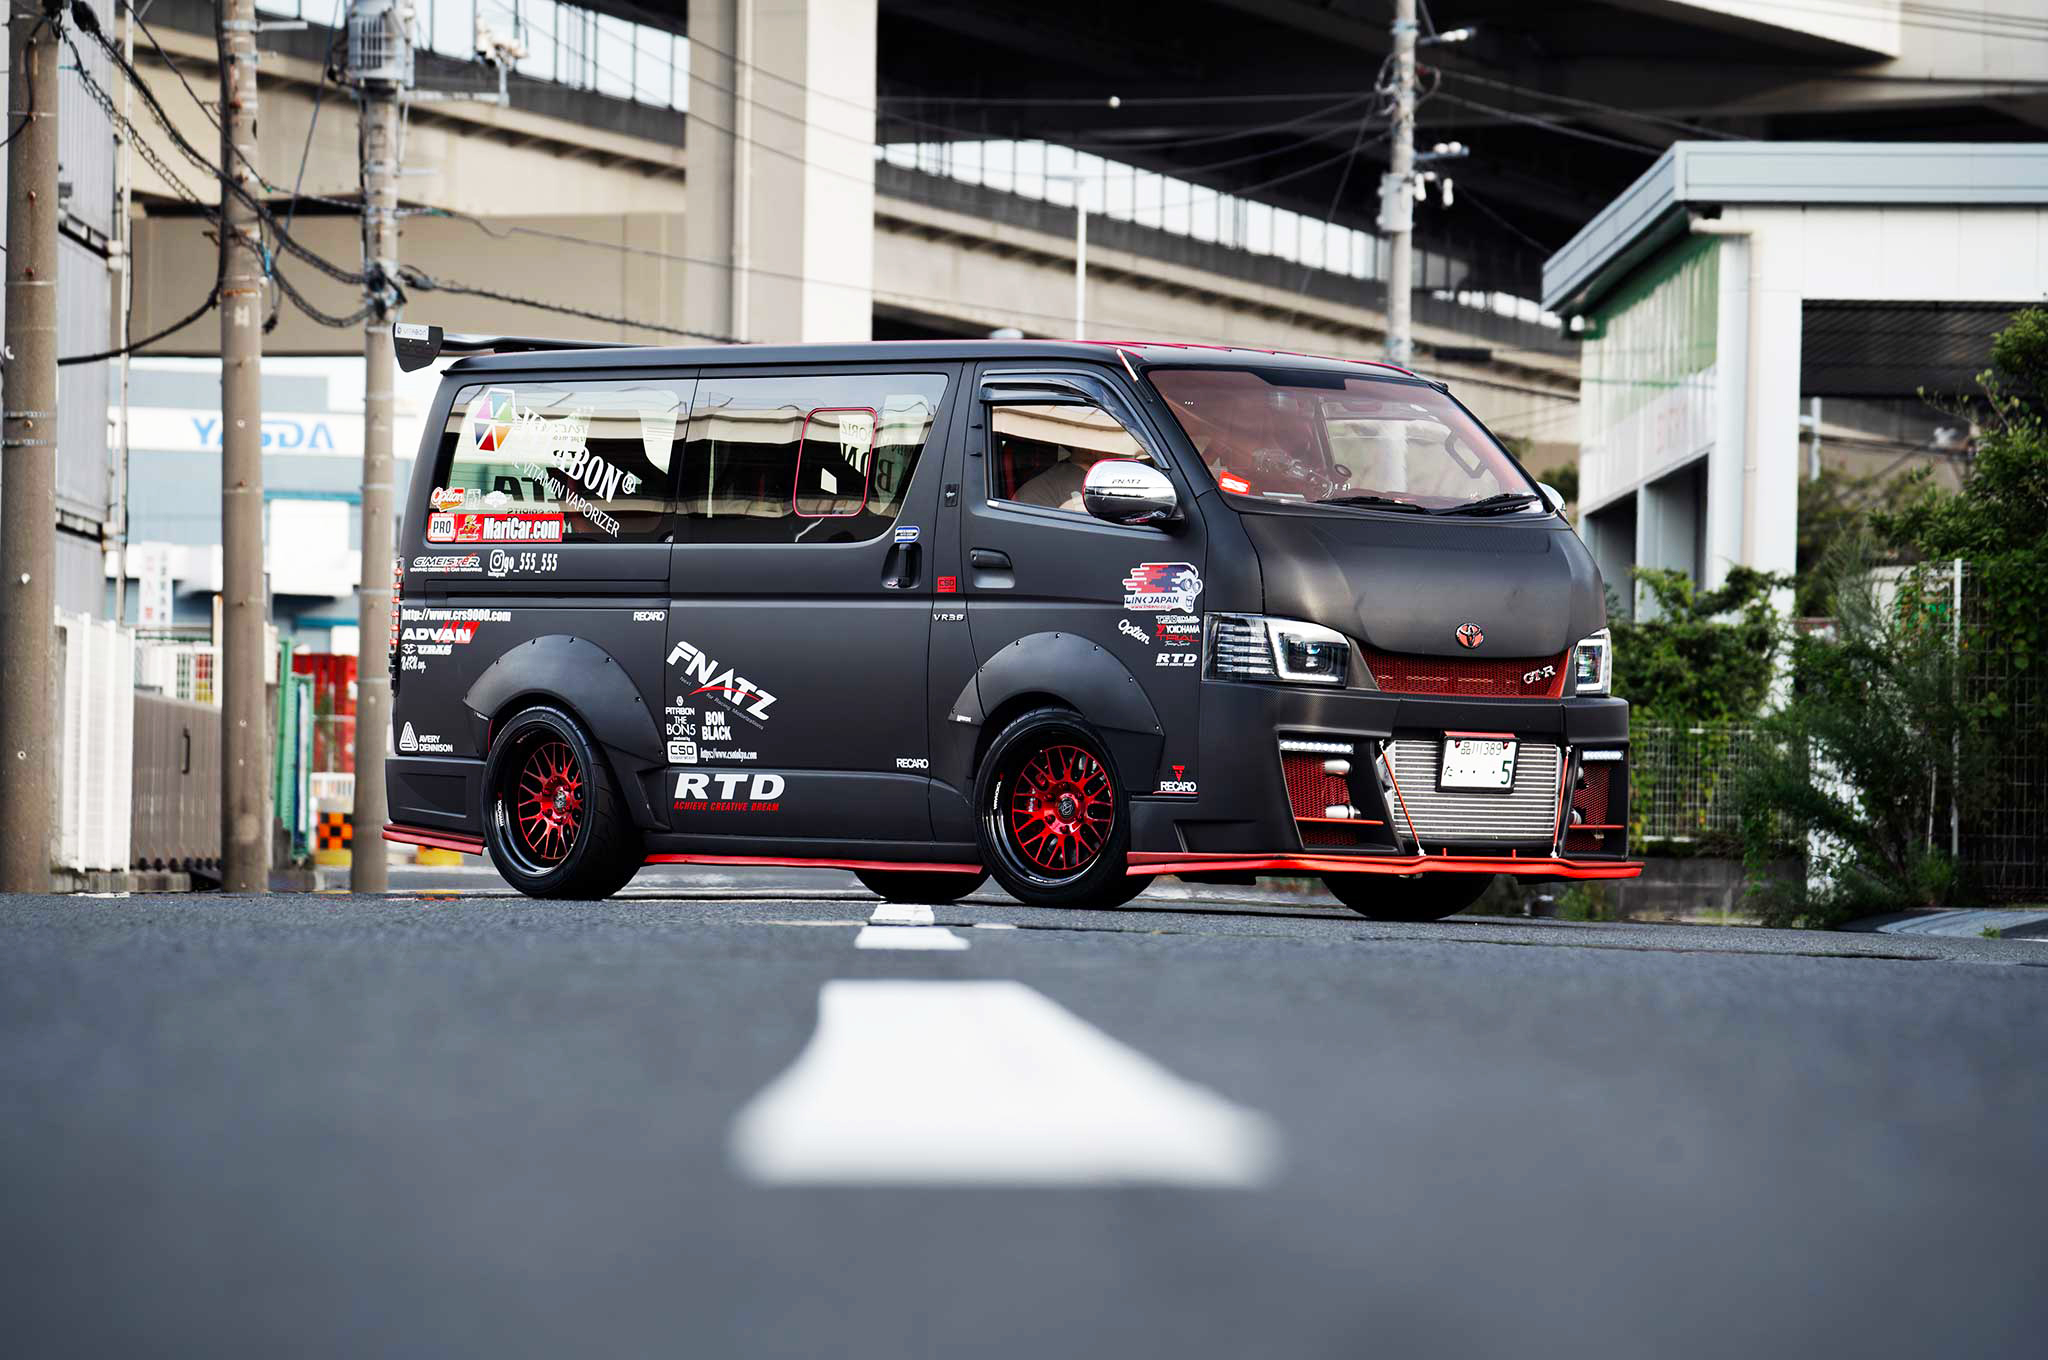 600 lóerős Toyota furgon Nissan GT-R motorral – ez egy igazi szörny! - Blikk